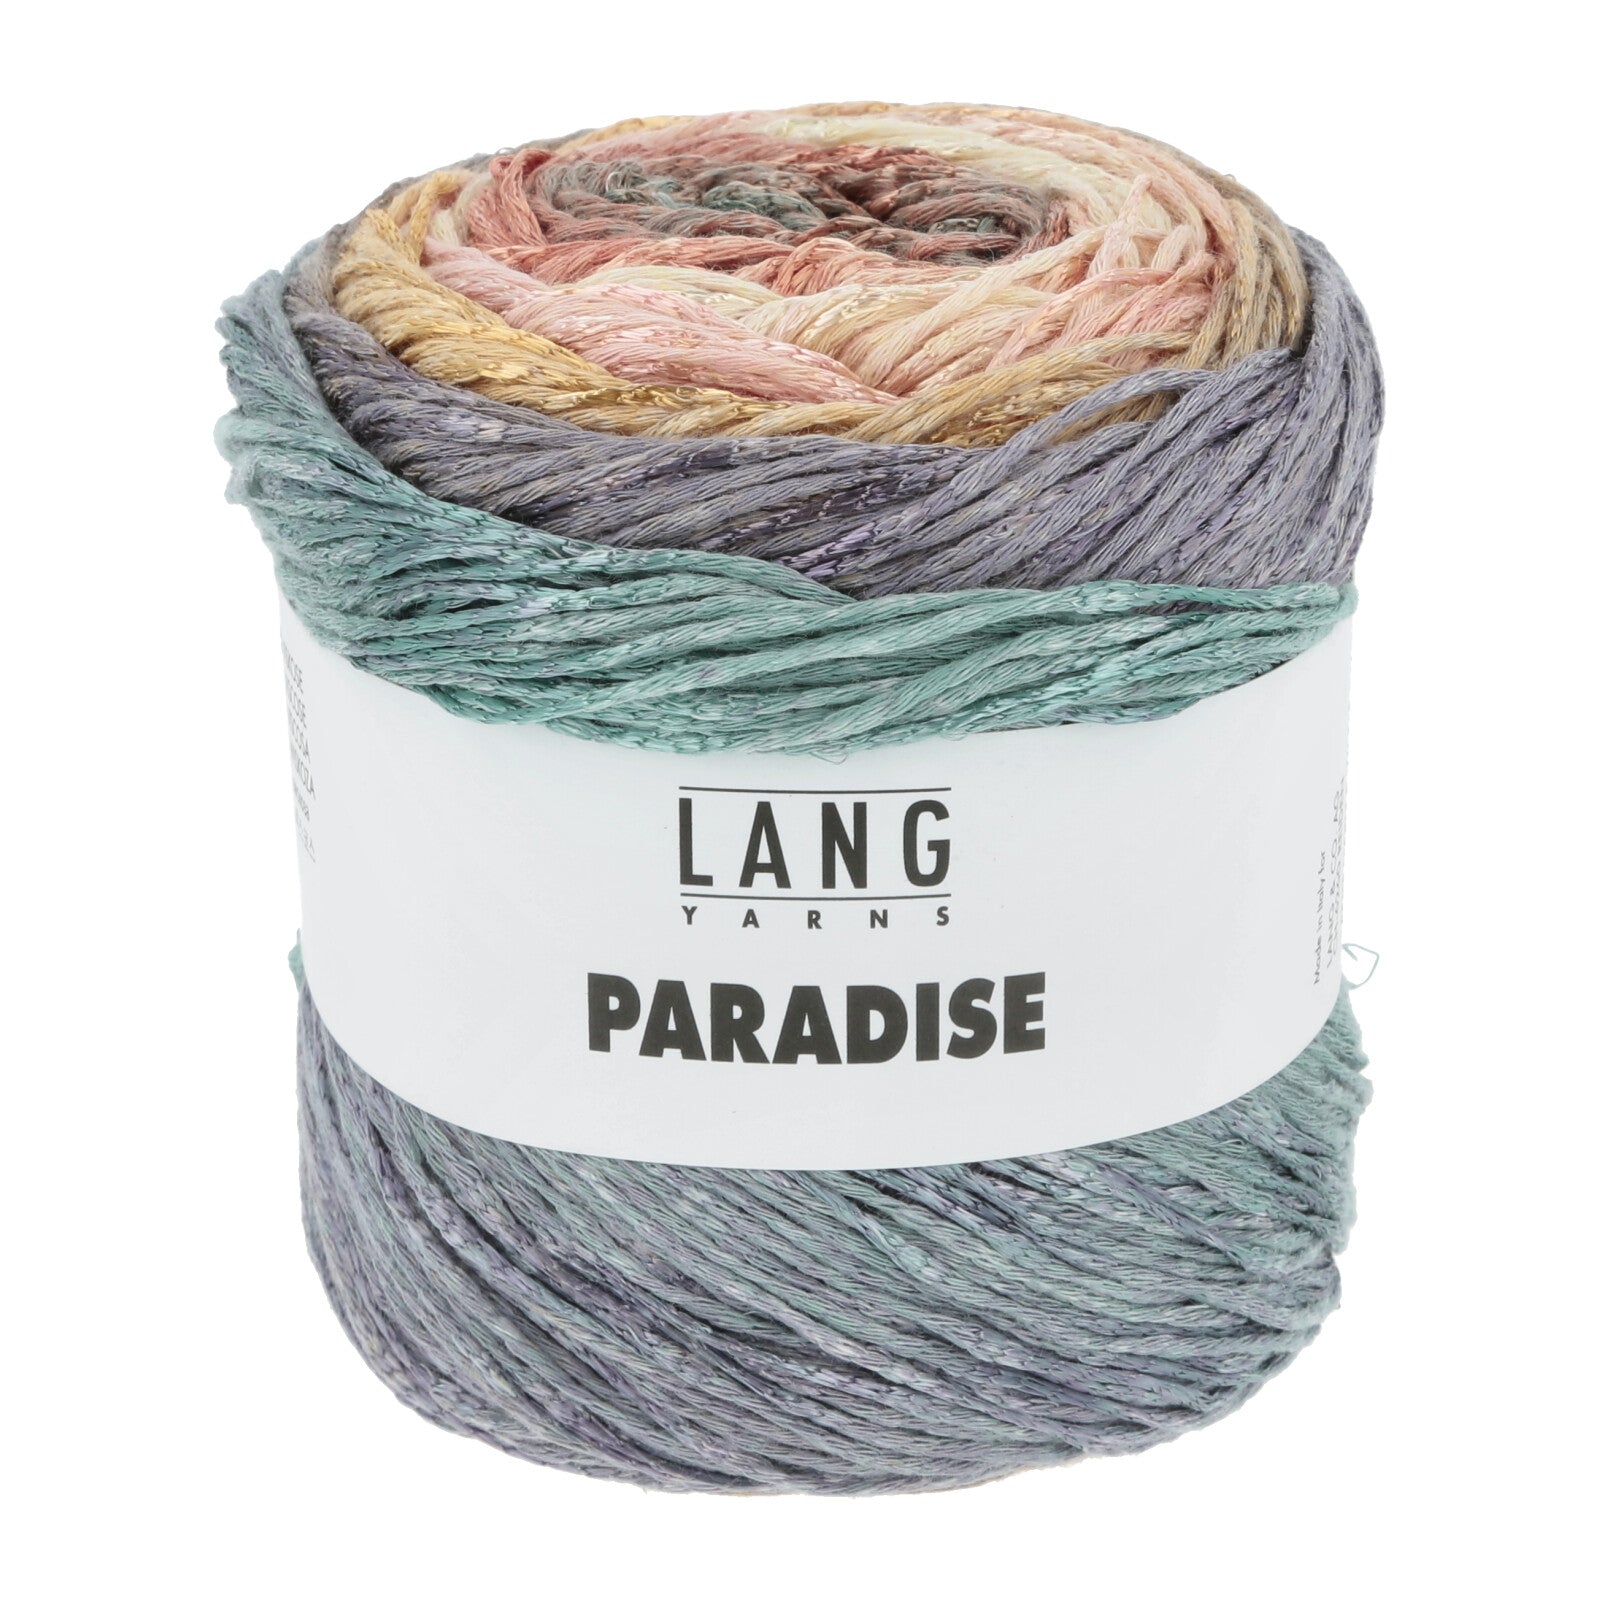 Lang Yarns Paradise yarn color 9